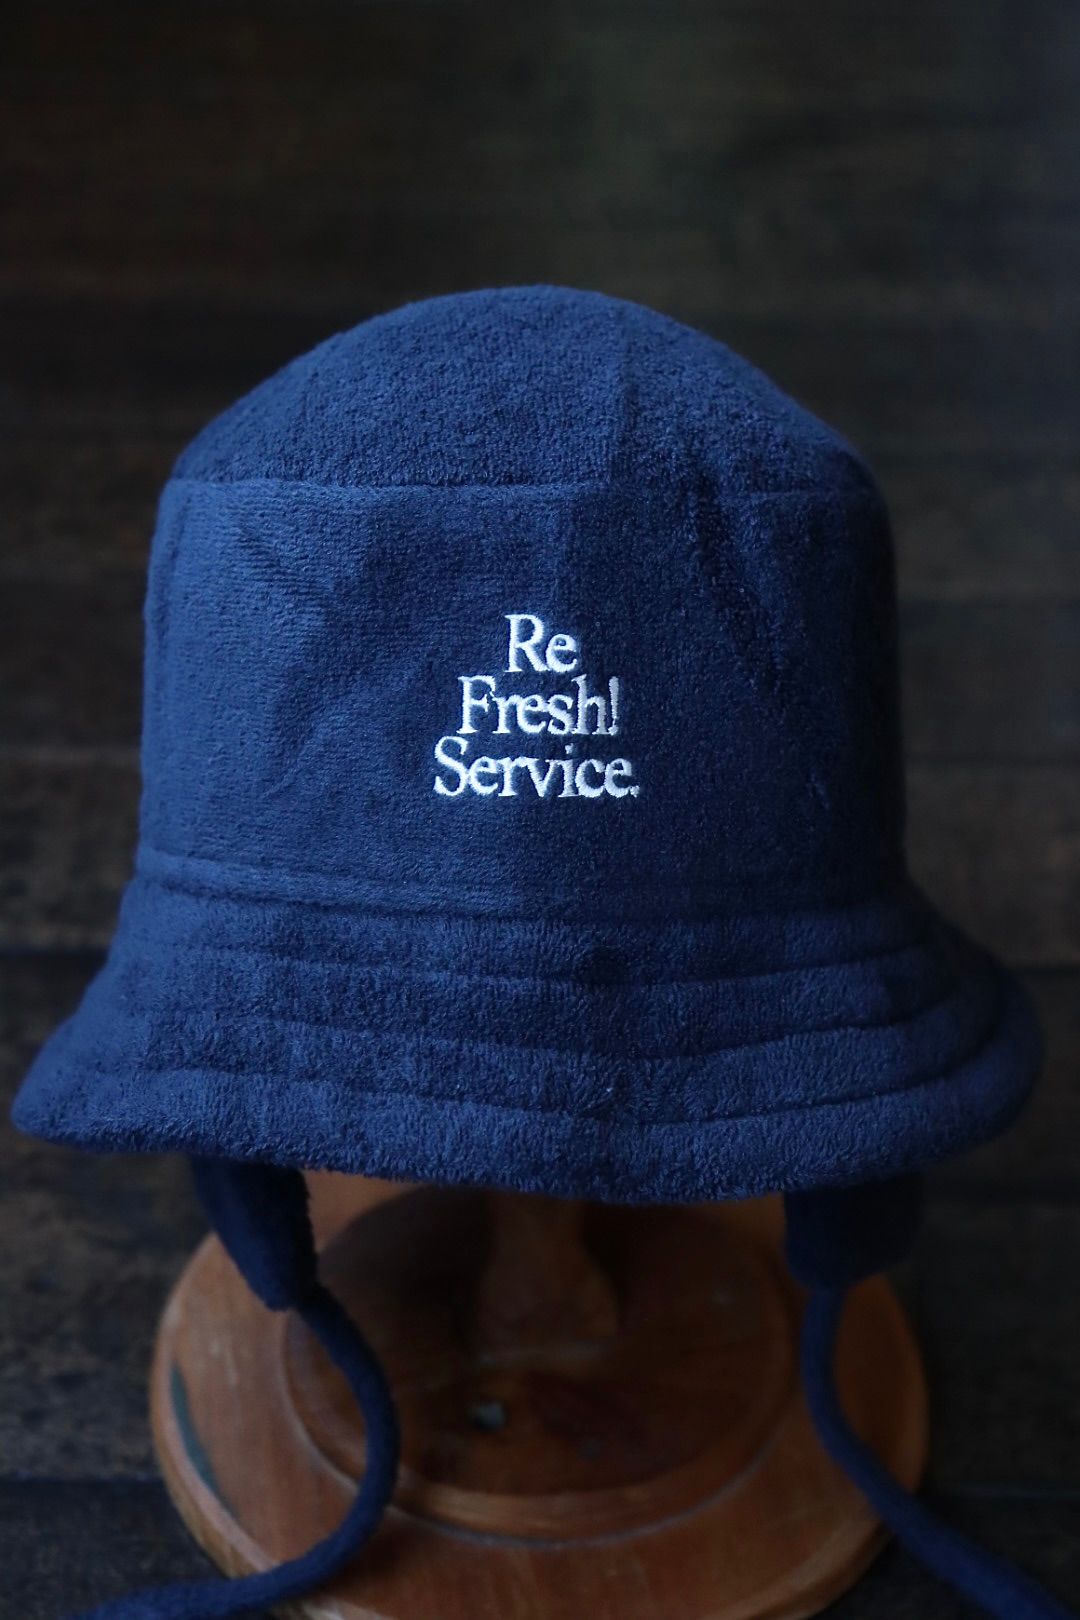 FreshService - ReFresh!Service. PILE SAUNA HAT(FSR241-90150)NAVY 